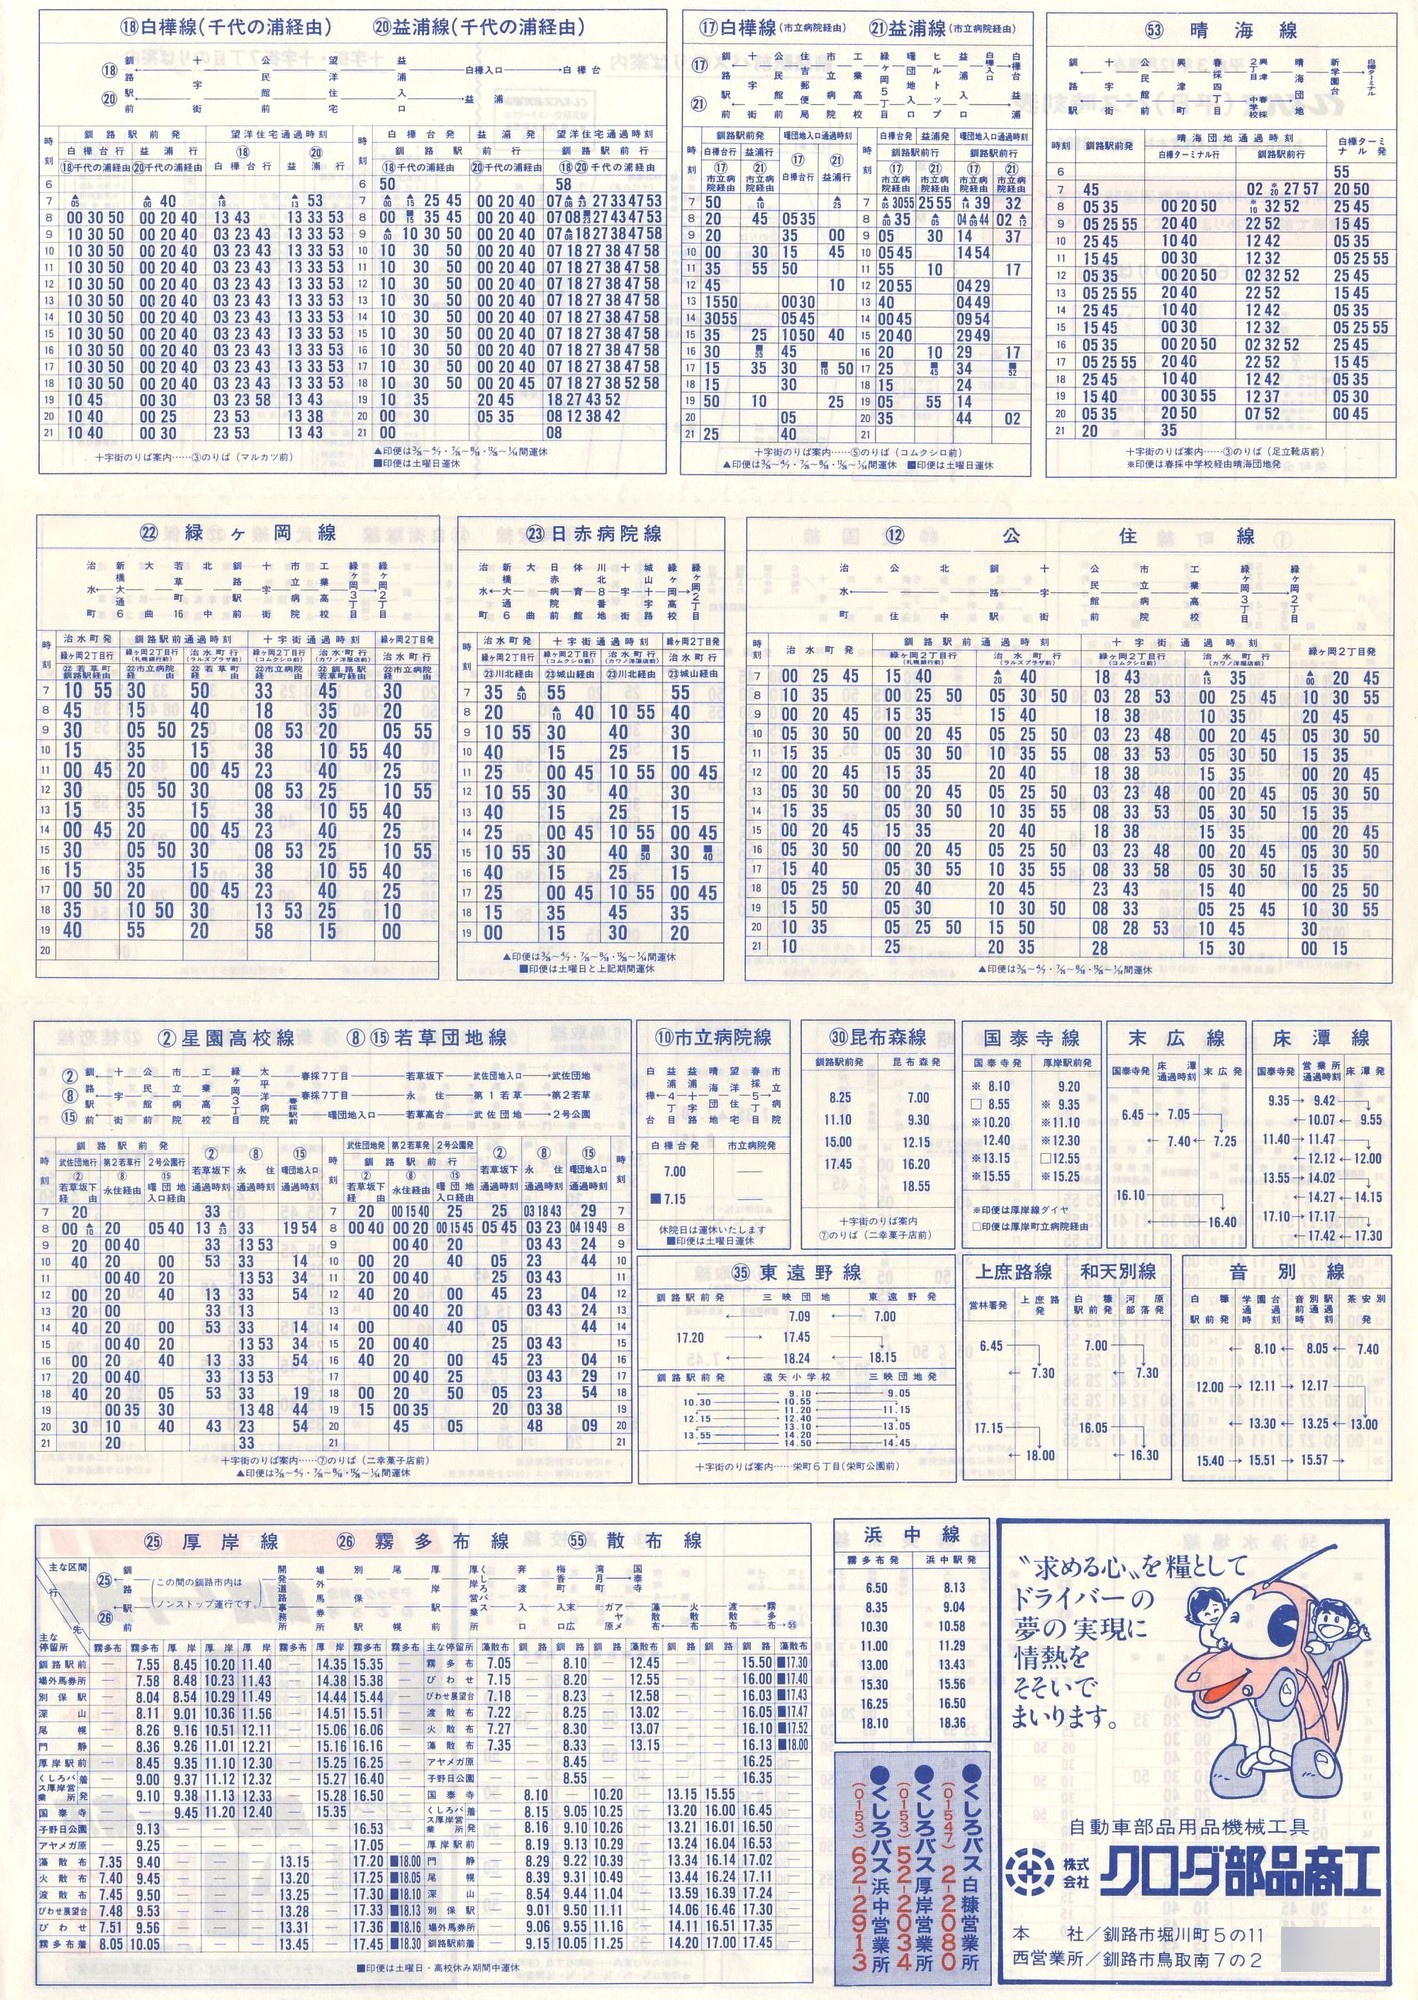 1988-11現在_東邦交通_平日時刻表裏面